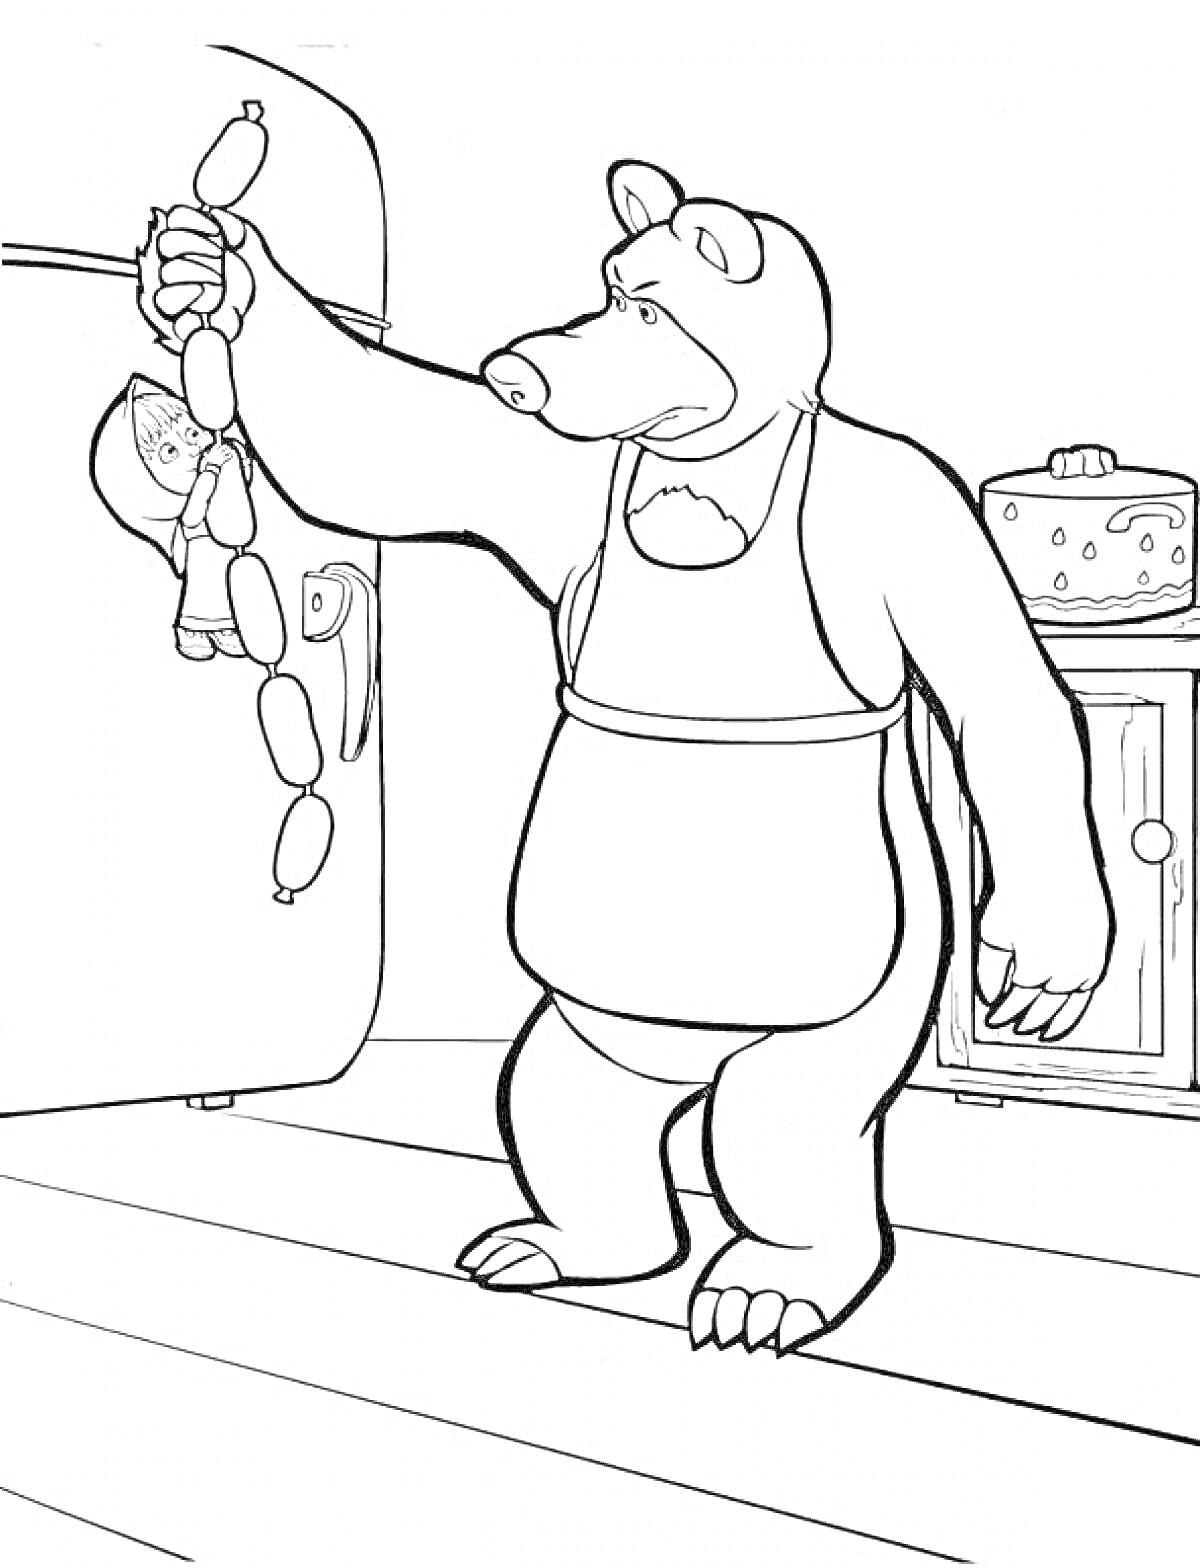 Белый Медведь держит Машу и сосиски в своей кухне, на фоне холодильник и шкаф с пирогом